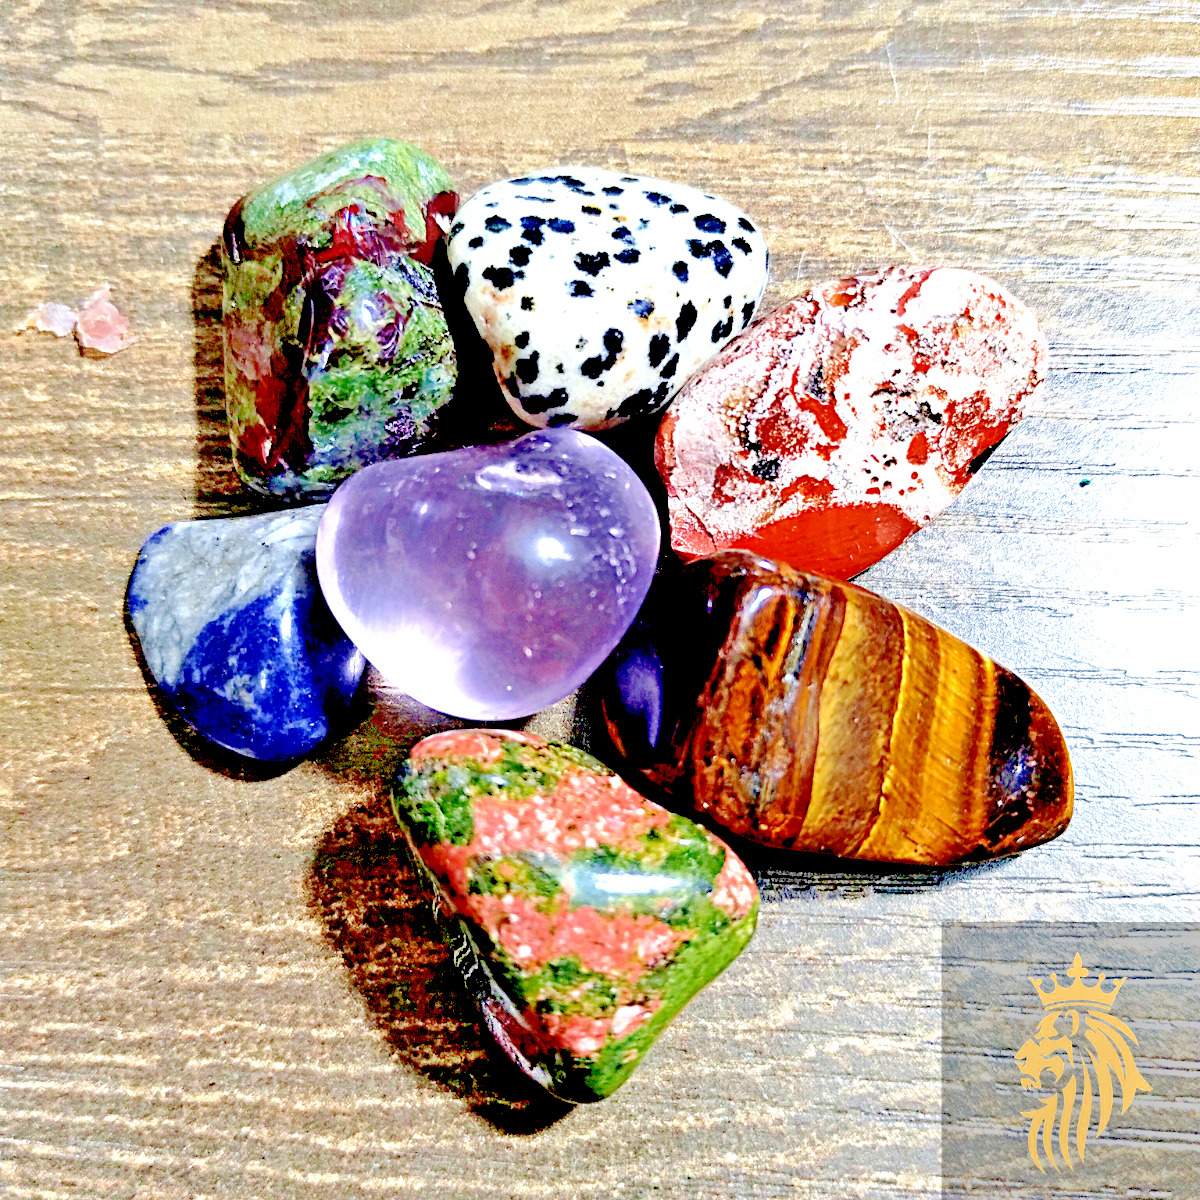 Tumbled Stones Gemstone Mix Polished Rocks Crystal Bulk Lot (Small Medium Large)